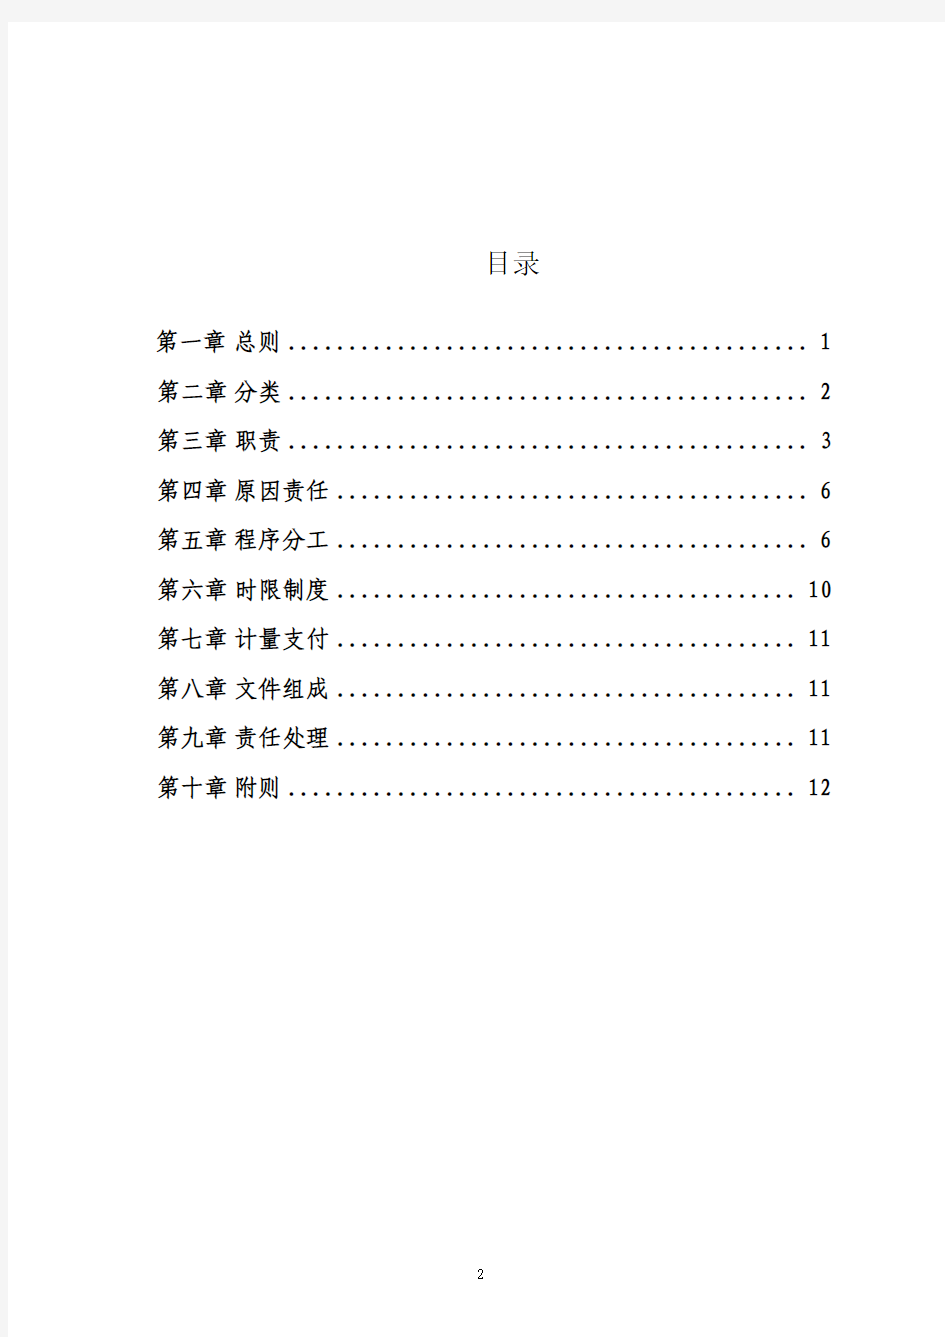 深圳市地铁集团有限公司工程变更管理办法(最新颁布稿2013.09.25)